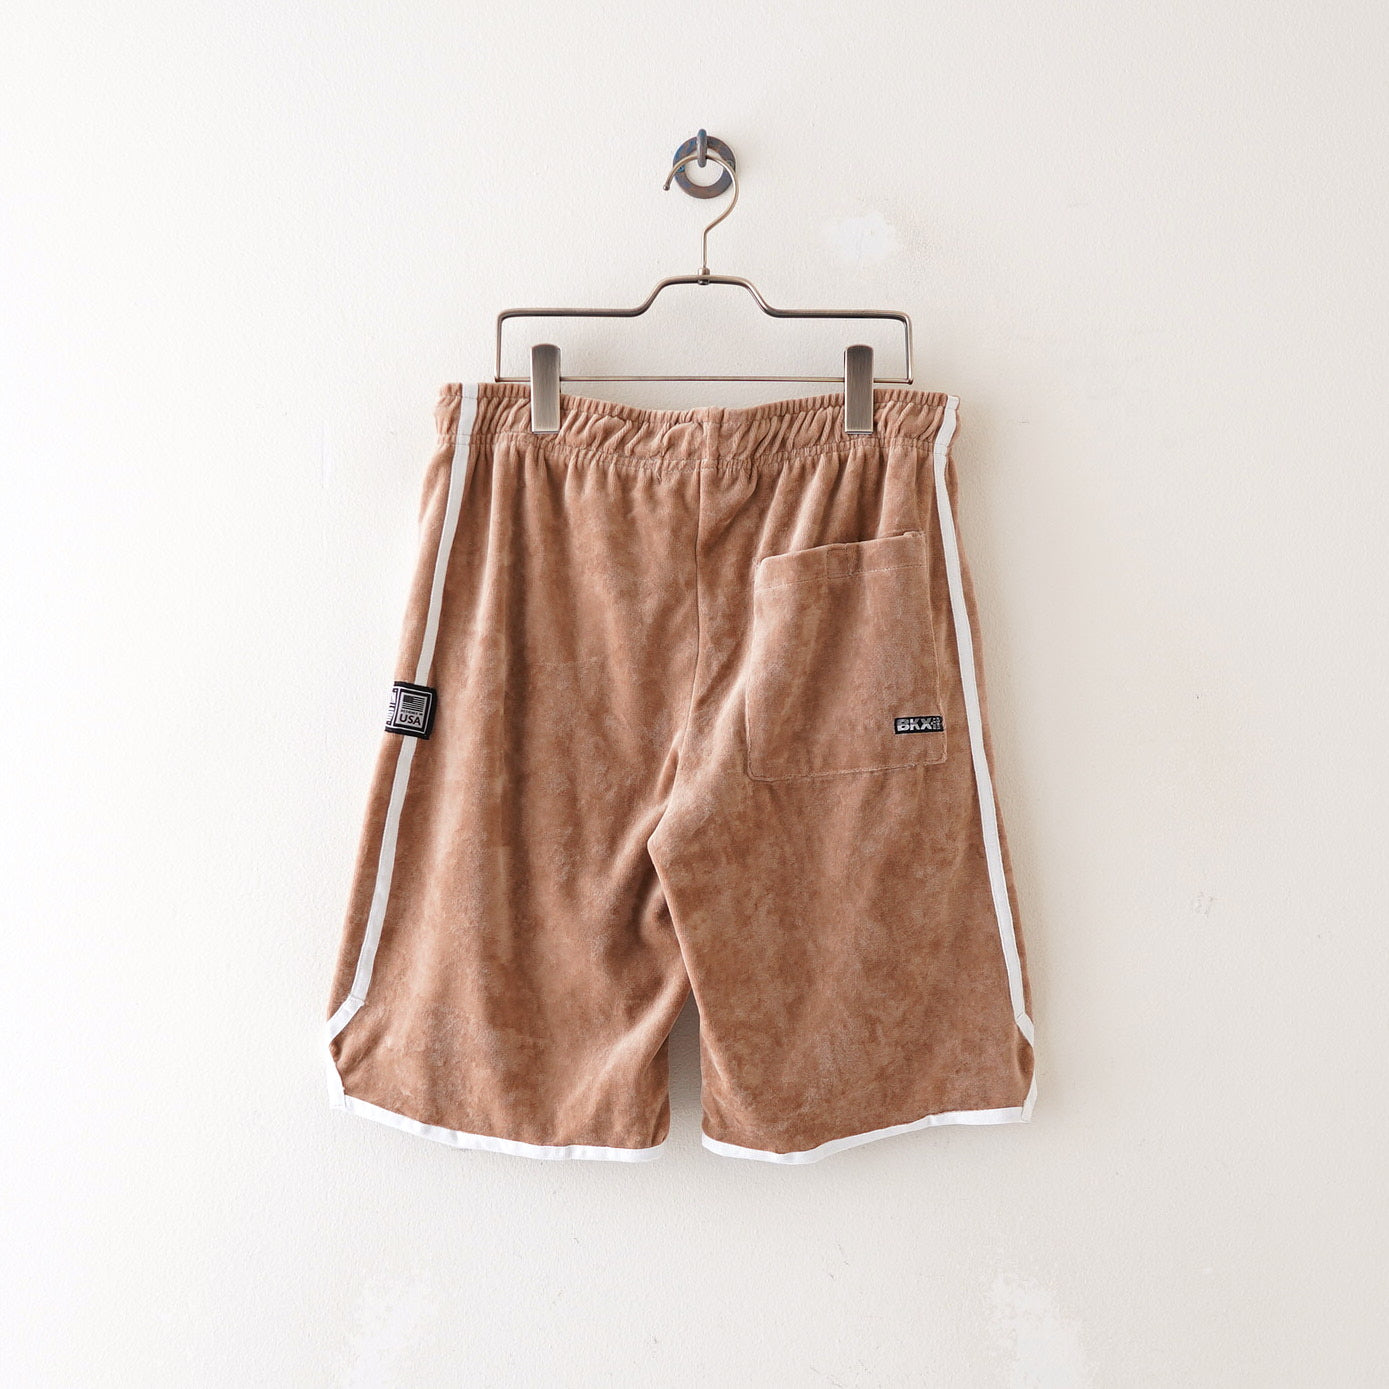 BKX vevet sport shorts